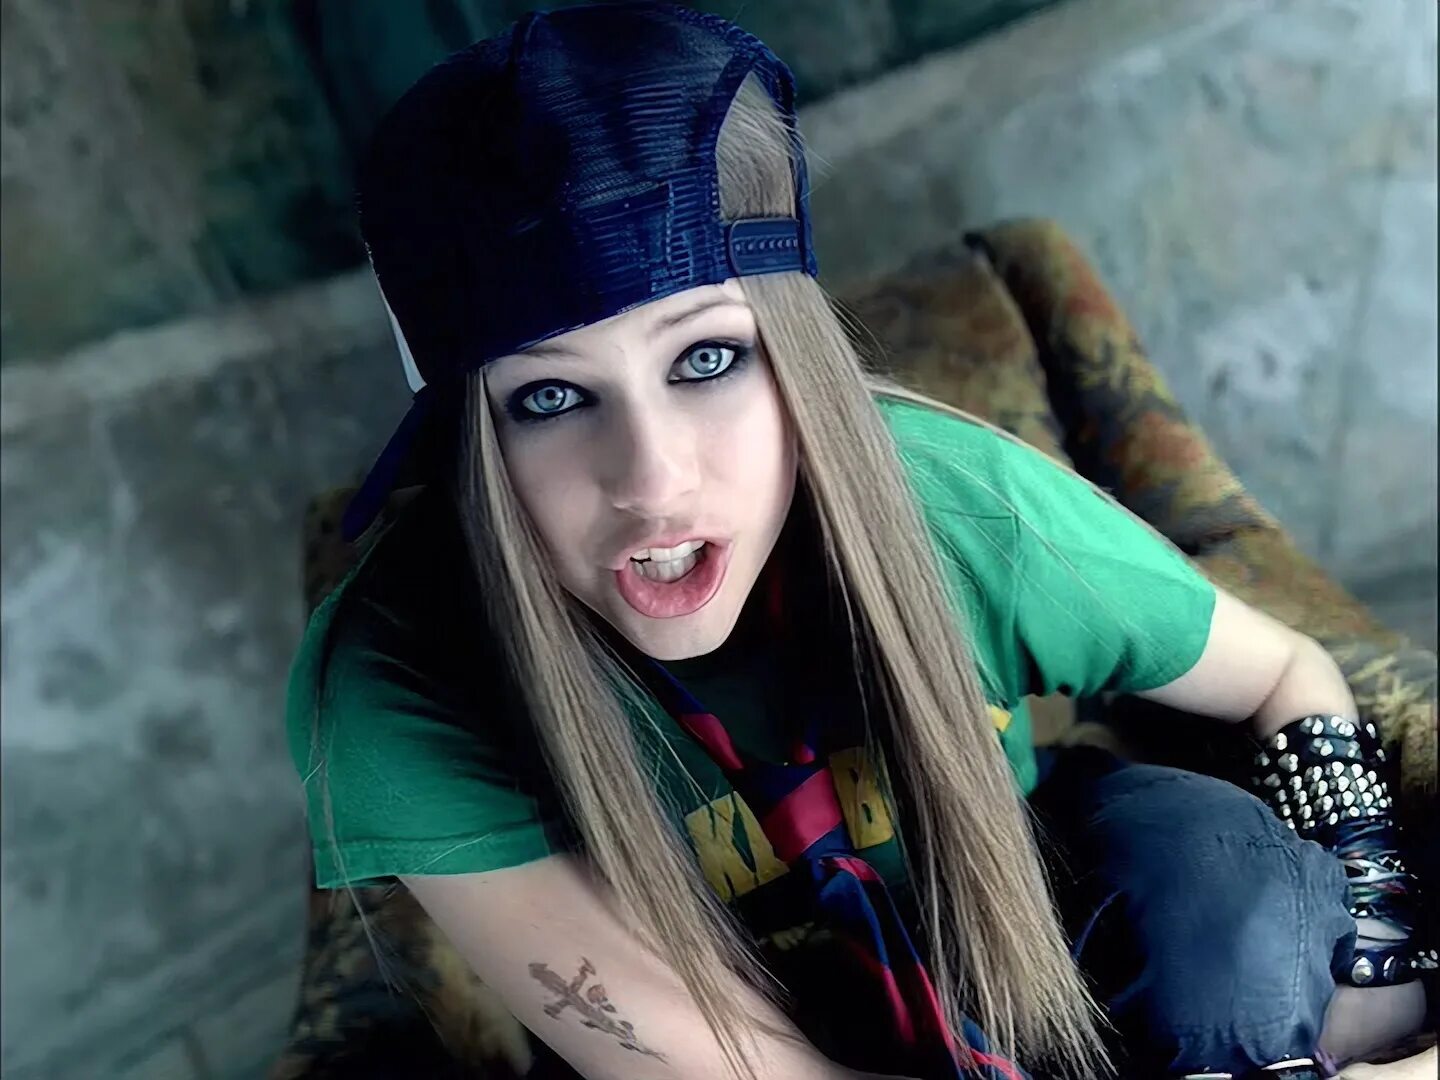 Аврил Лавин sk8er boi. Скейтер бой Аврил. Avril Lavigne Skater. Avril Lavigne Skater boy. Avril lavigne boi